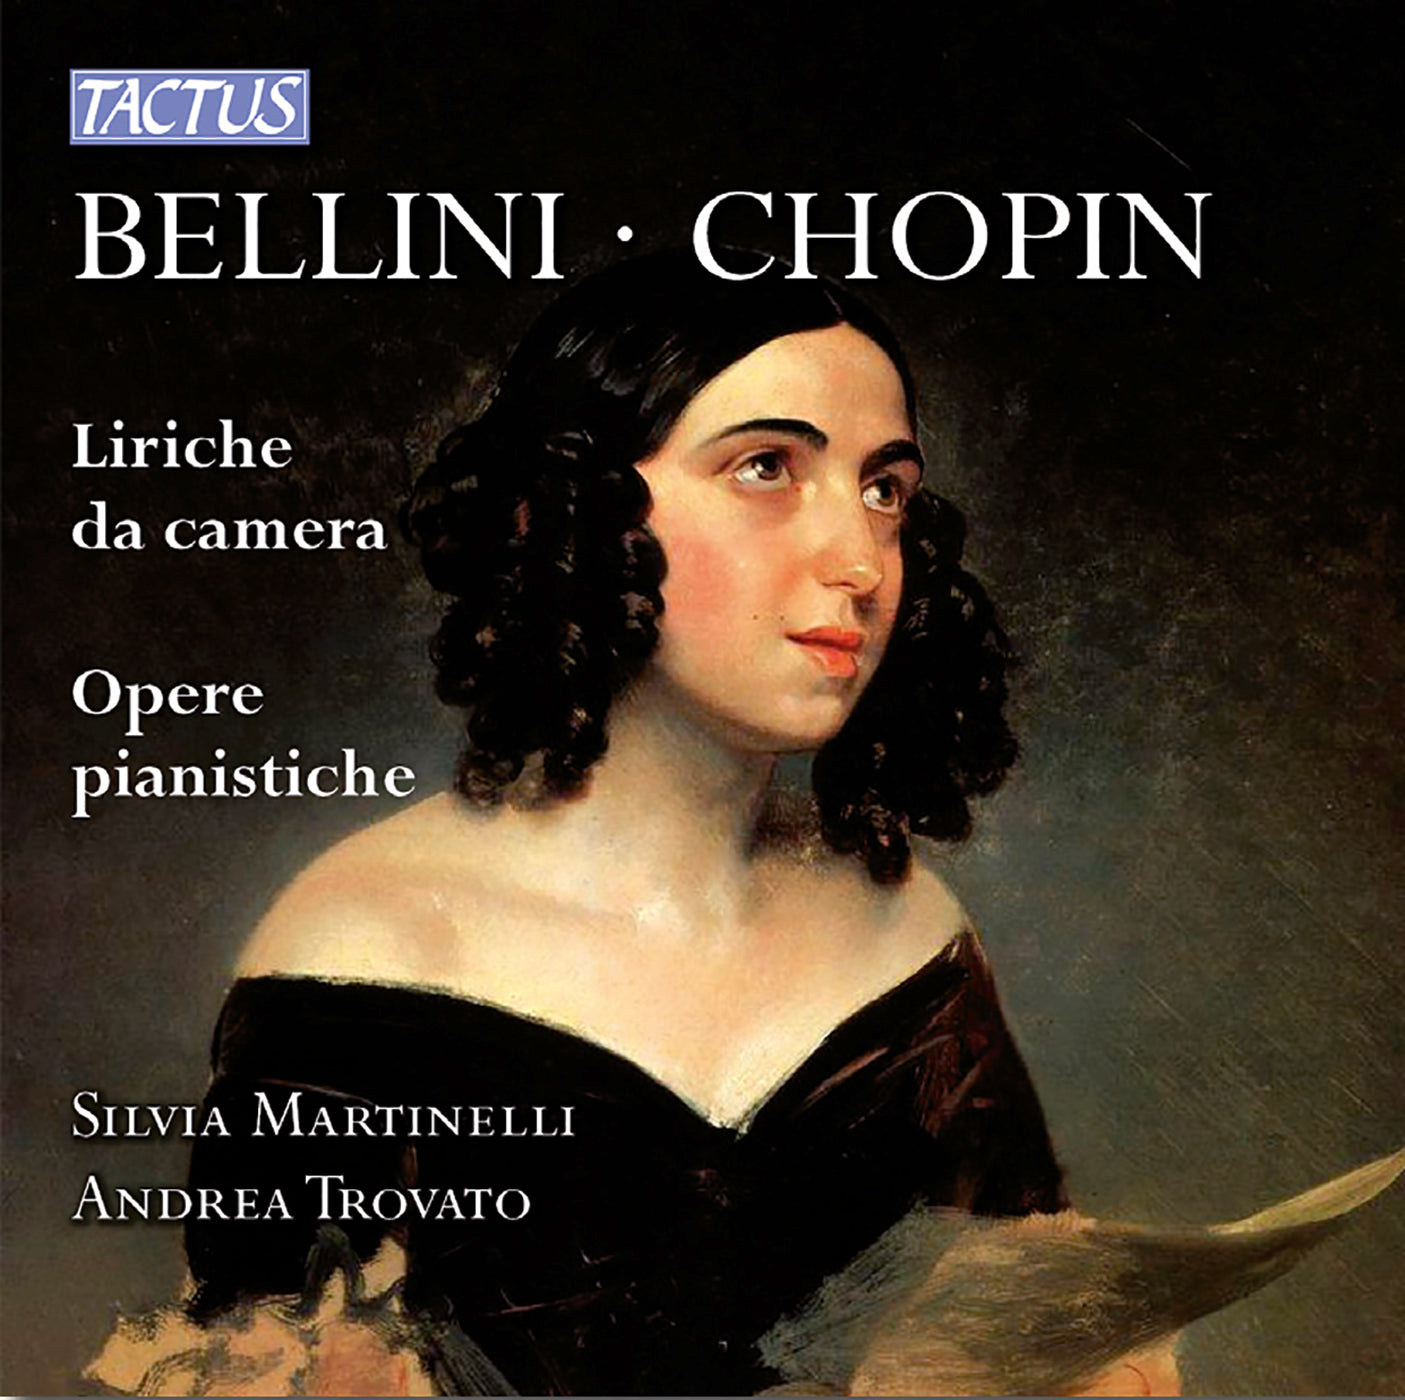 Bellini & Chopin: Liriche da camera & Opere pianistiche / Trovato, Martinelli